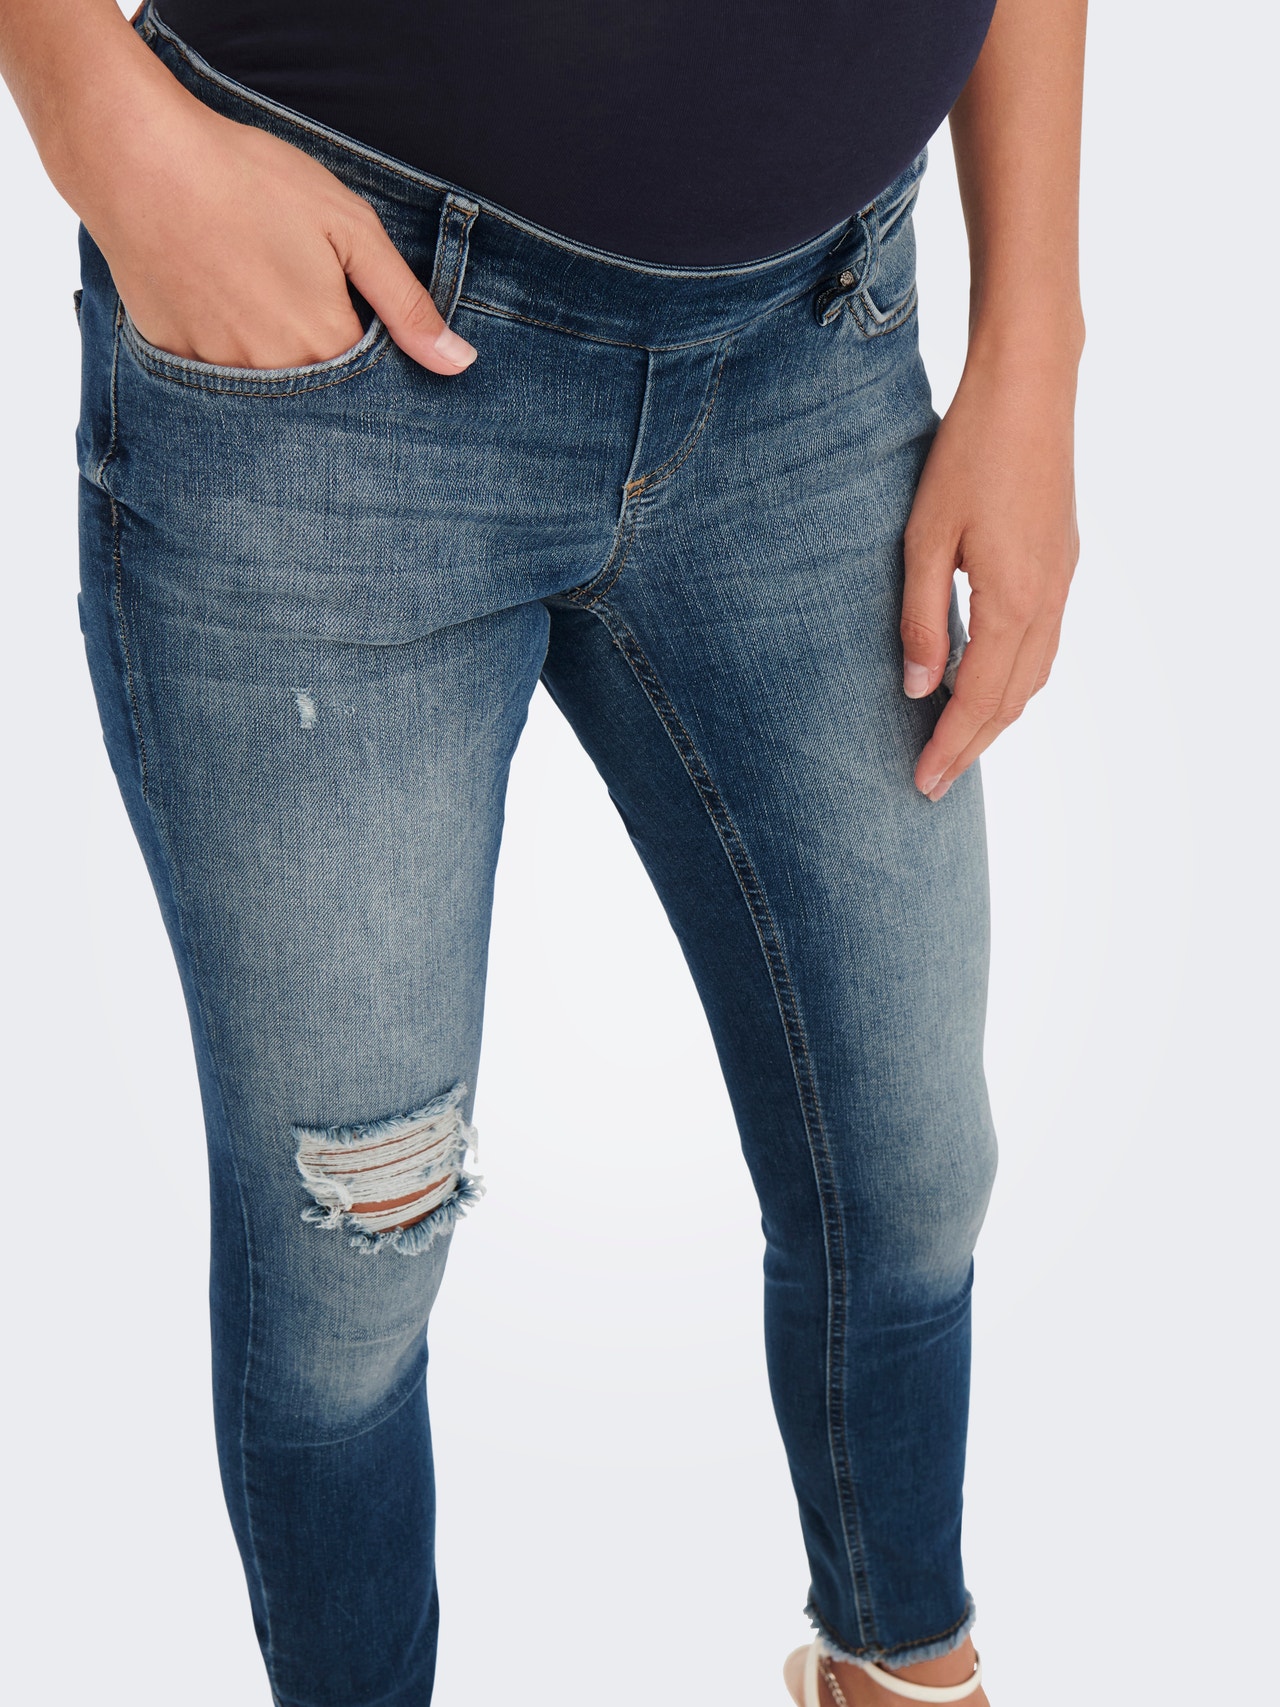 ONLY Skinny Fit Mittlere Taille Jeans -Dark Medium Blue Denim - 15277775